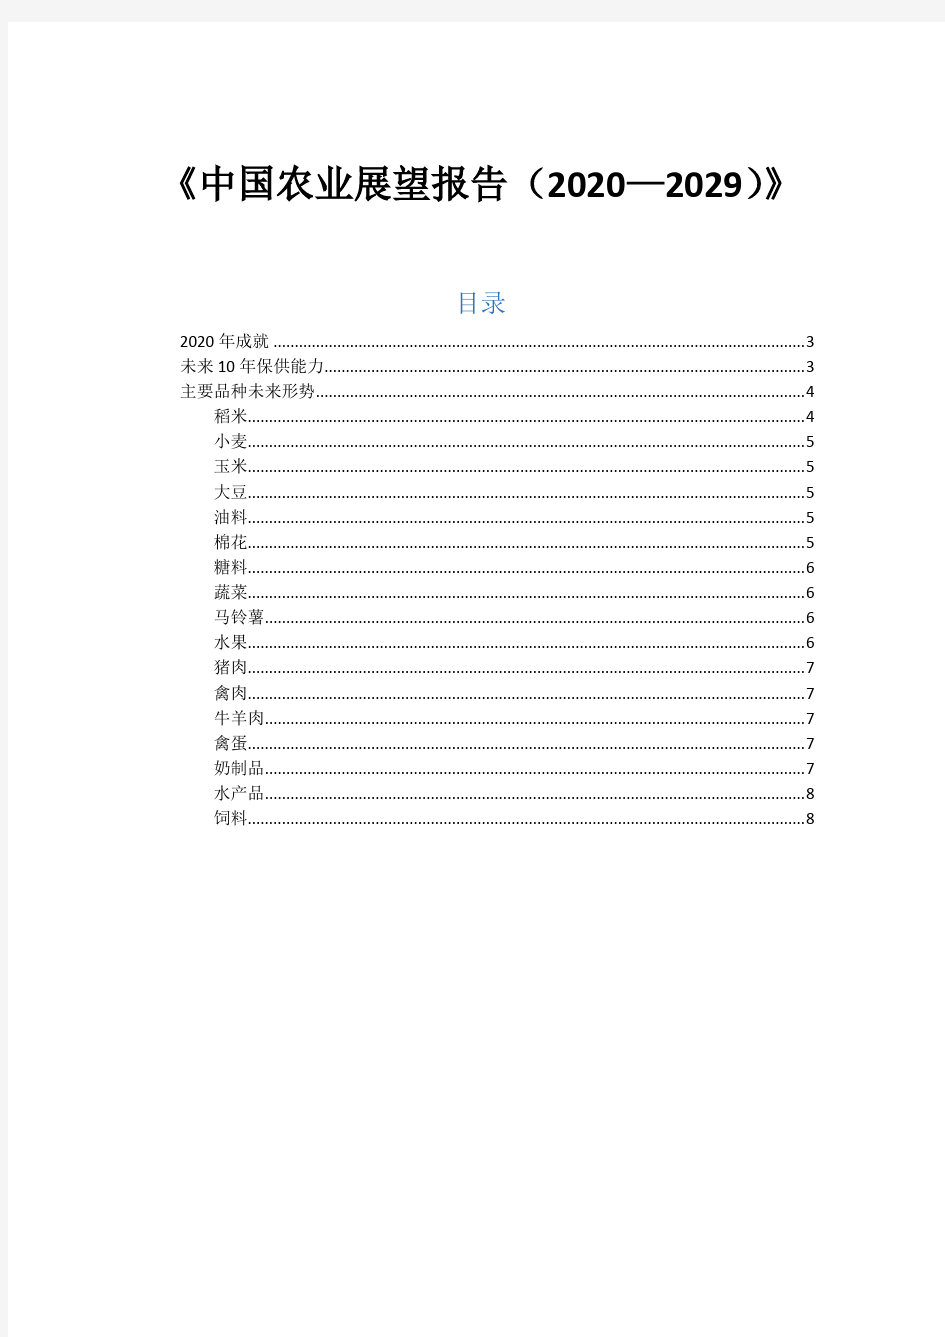 中国农业展望报告2020-2029